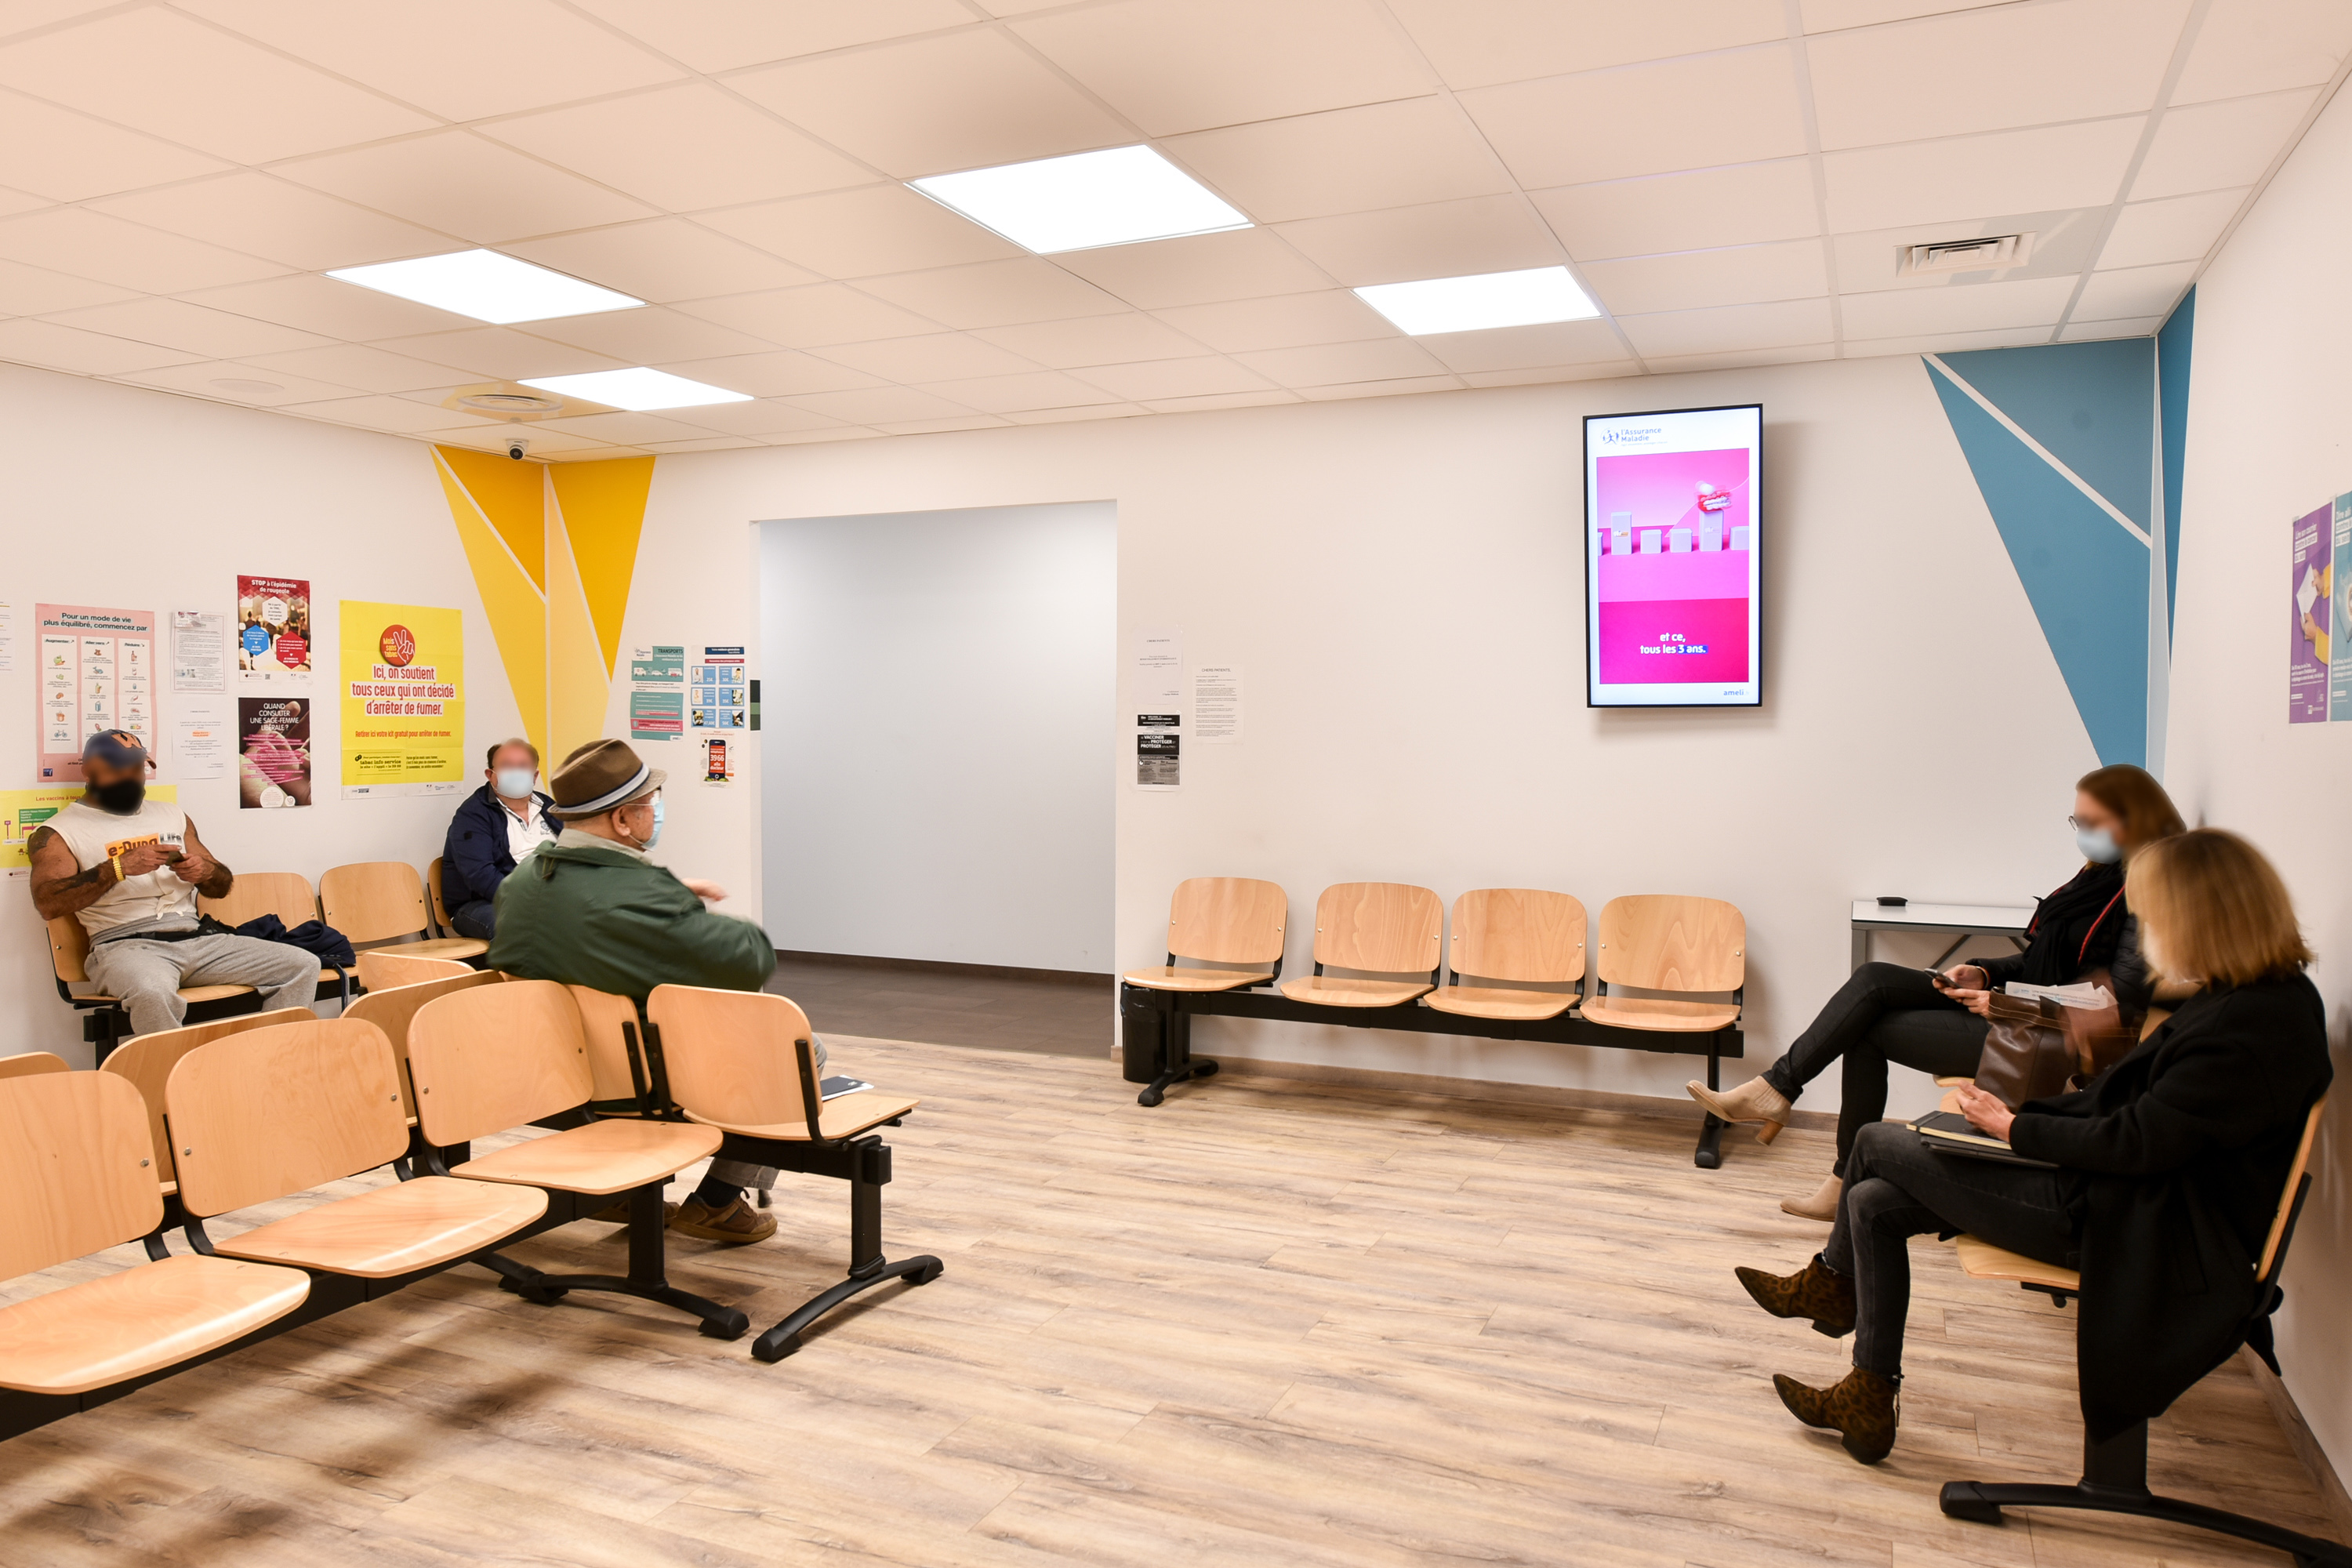 Salle attente médicale équipée d'un écran d'affichage dynamique pour informer les patients